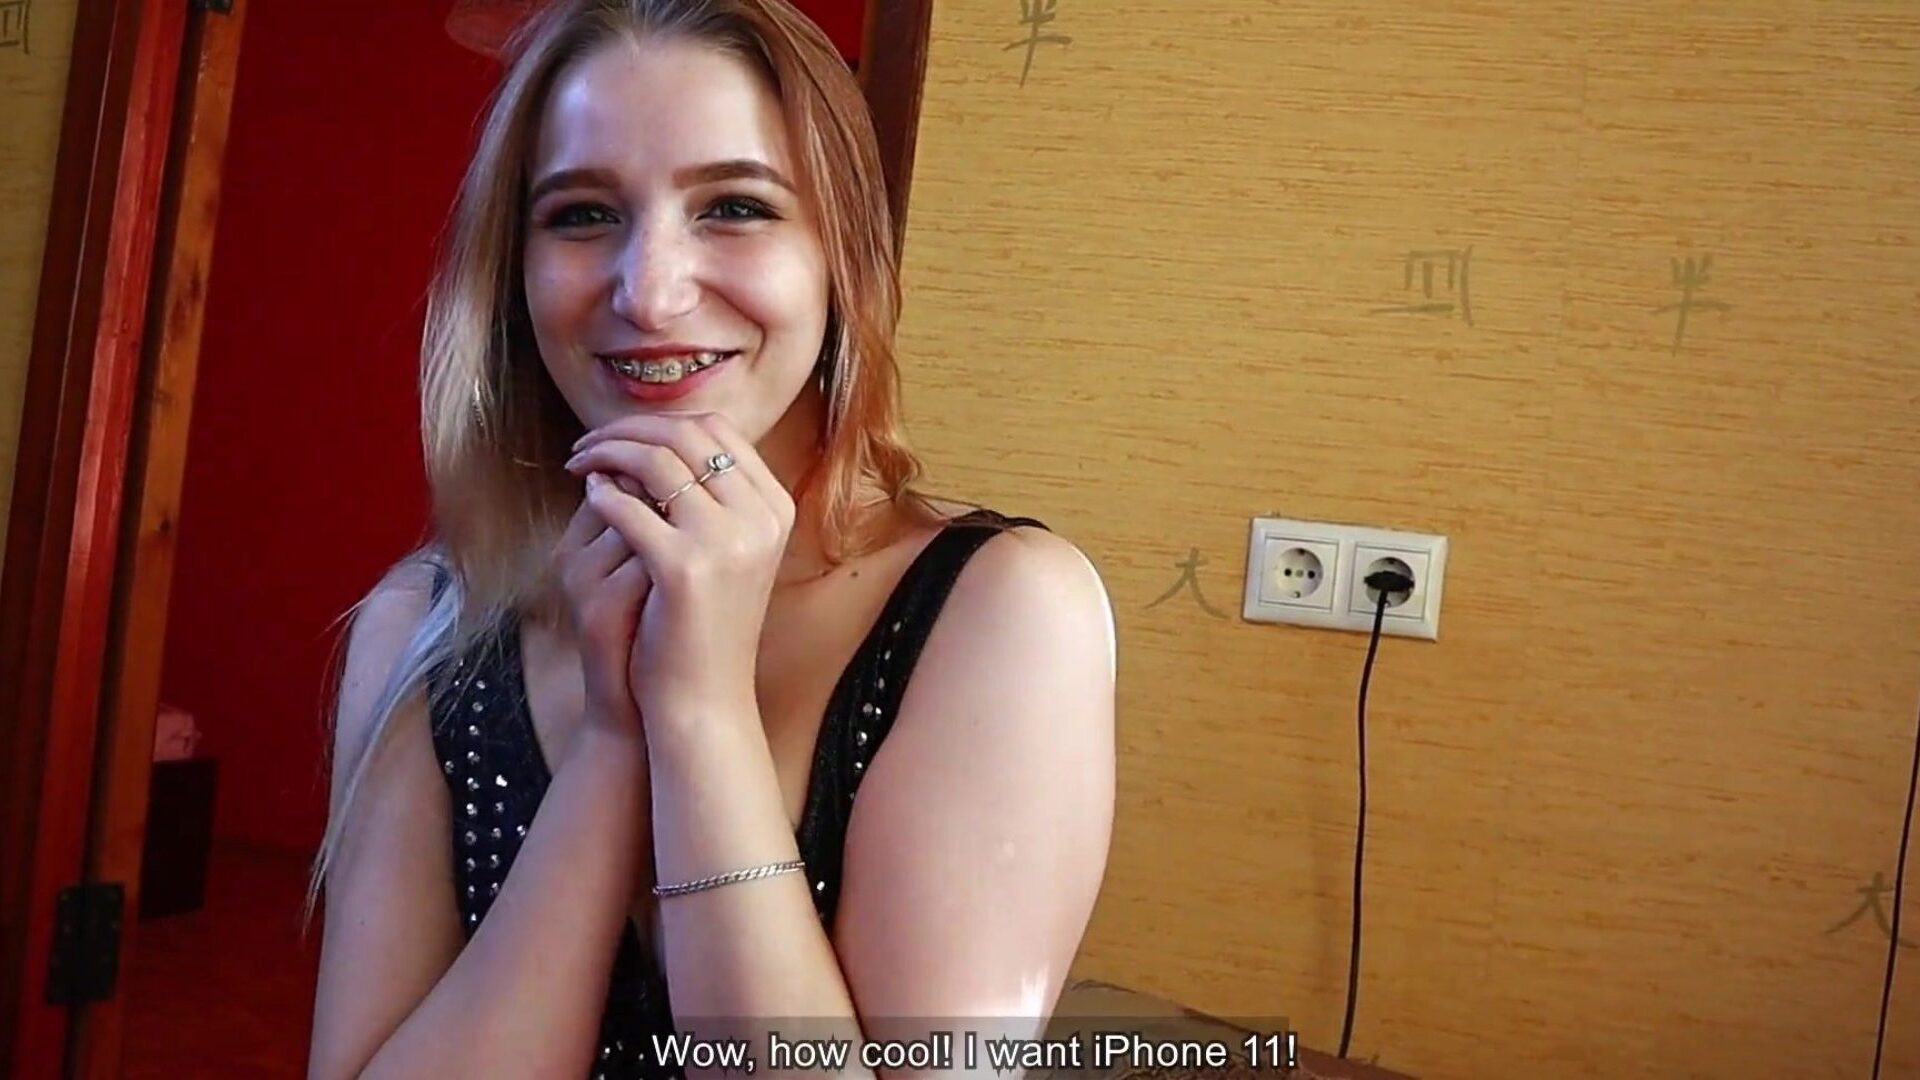 schönes Mädchen dankt ihrem Freund mit Blowjob und Sex für ein frisches iPhone | Sperma im Gesicht & geschluckt